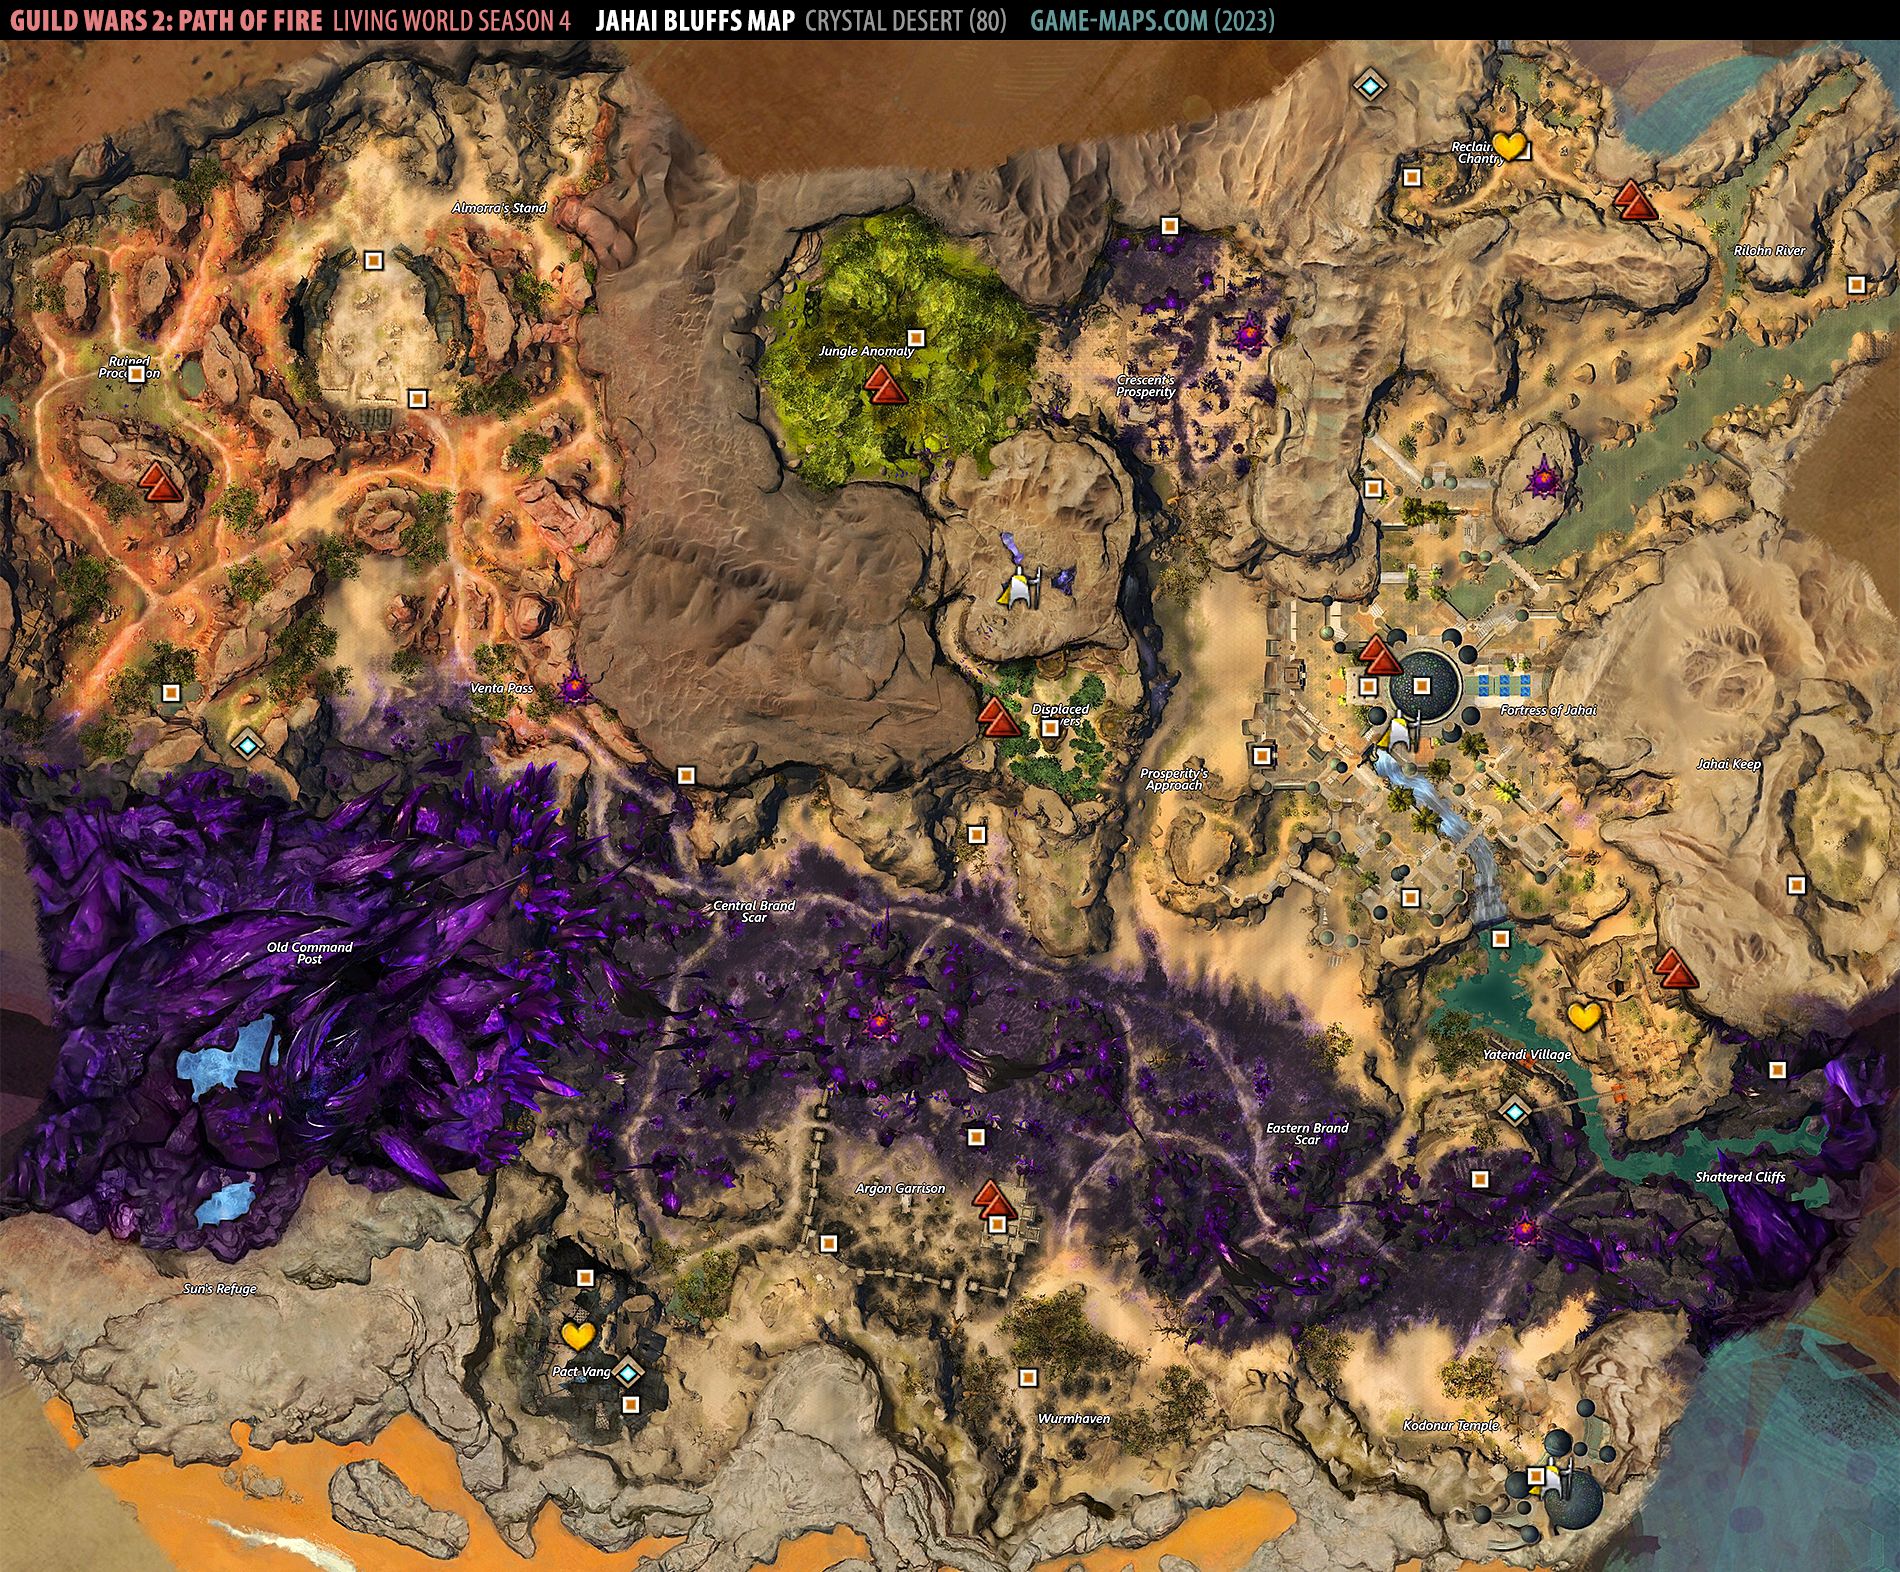 Jahai Bluffs Map Guild Wars 2